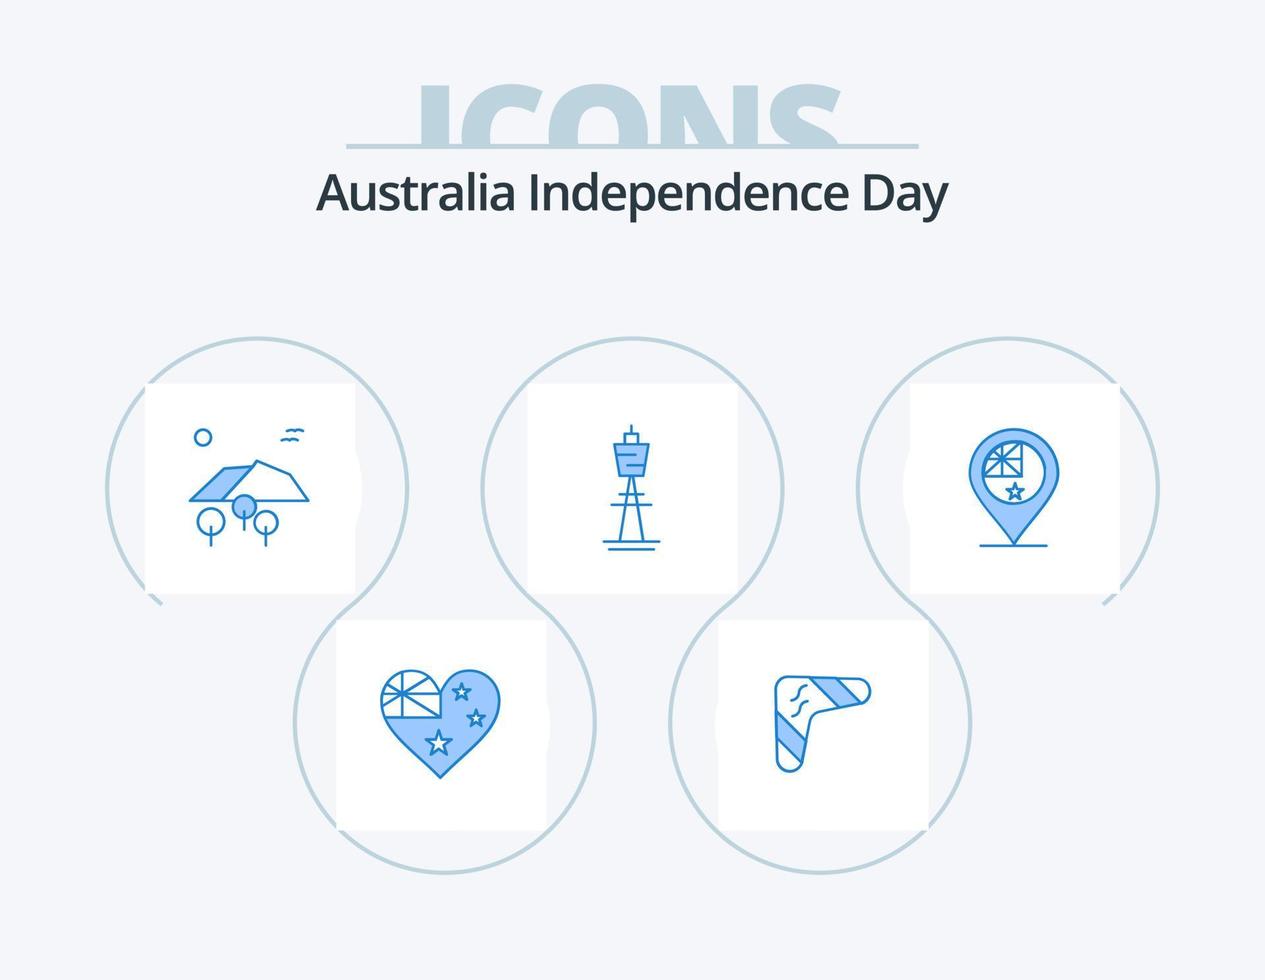 pacote de ícones azuis do dia da independência da austrália 5 design de ícones. sydney. australiano. viajar por. Austrália. árvore vetor